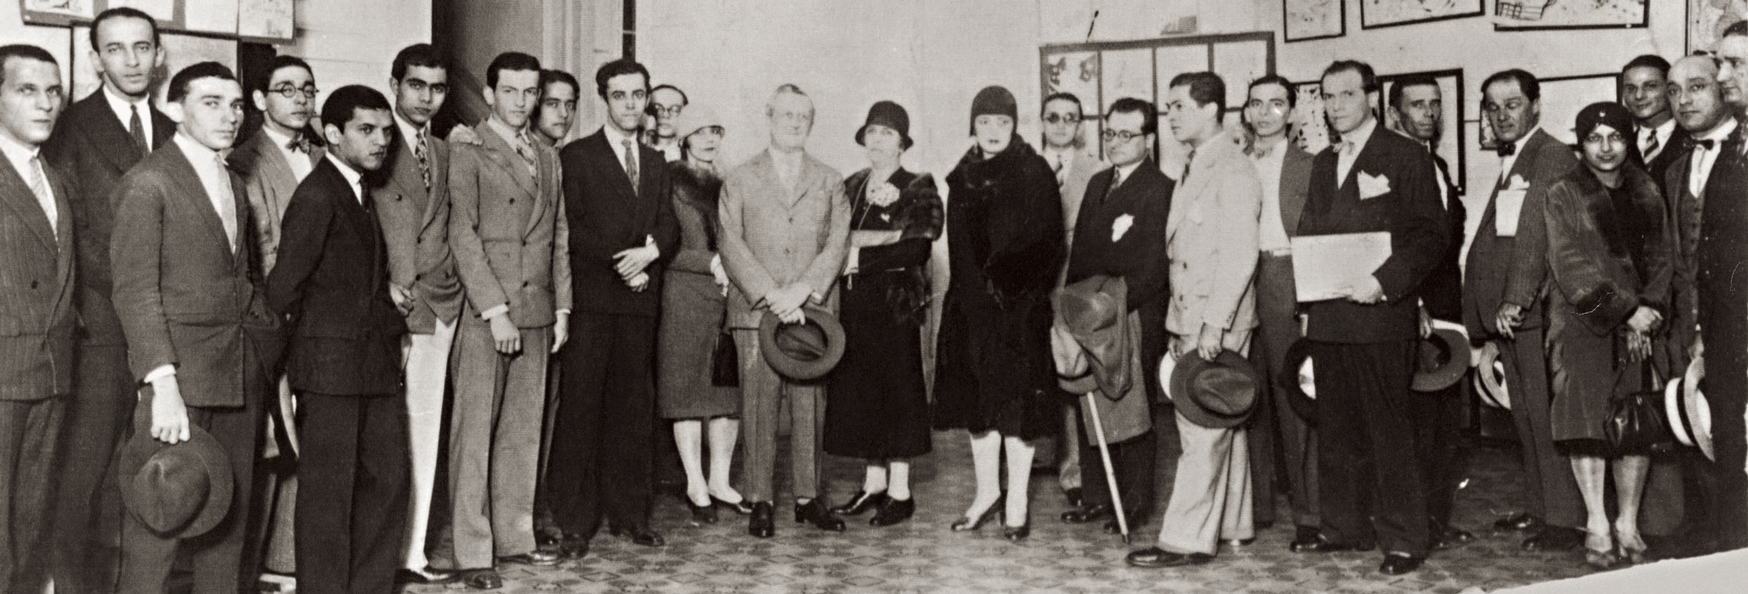 1928-Exposicao-de-Cicero-Dias-na-Policlinica-Rio-de-Janeiro.png